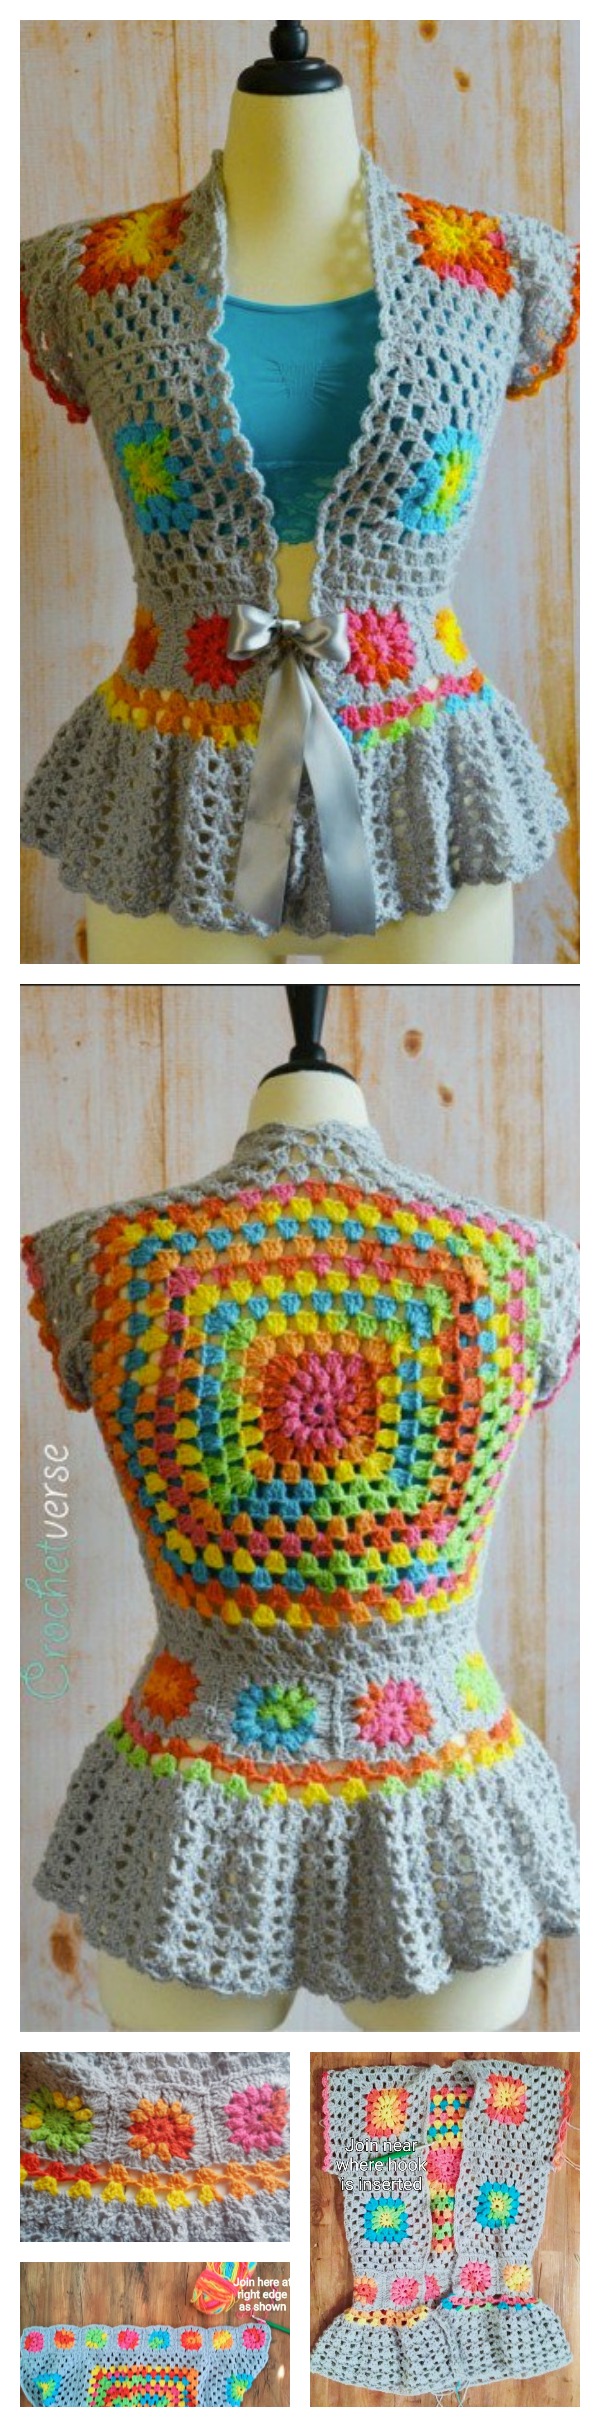 Crochet Garden Party Jacket Free Pattern